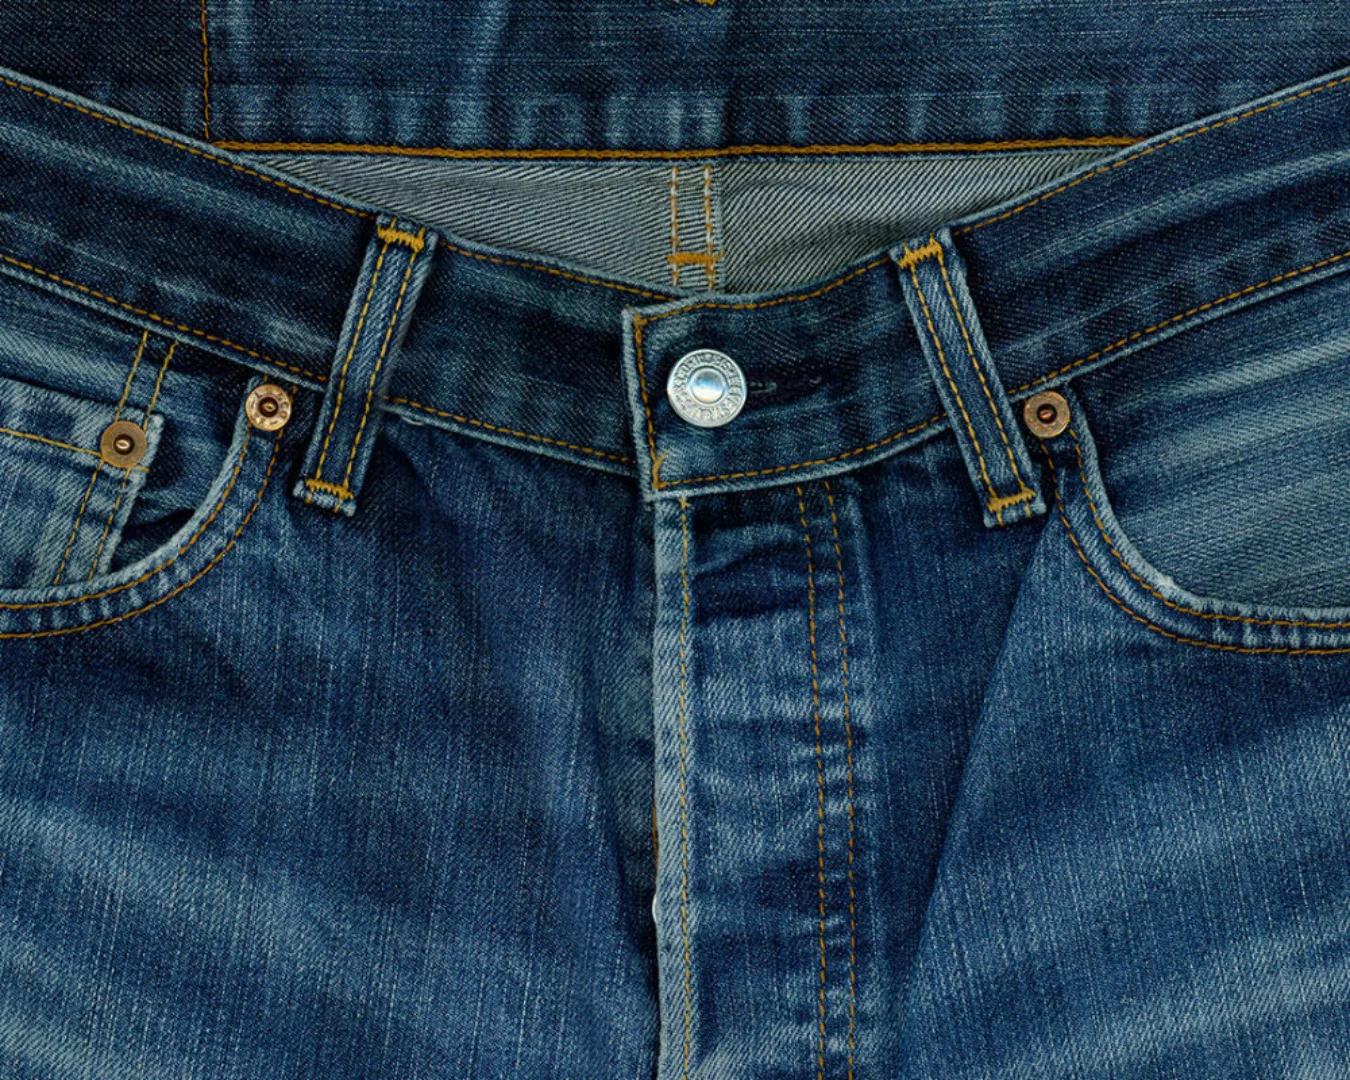 Fototapete "Jeans blau" 4,00x2,50 m / Glattvlies Brillant günstig online kaufen